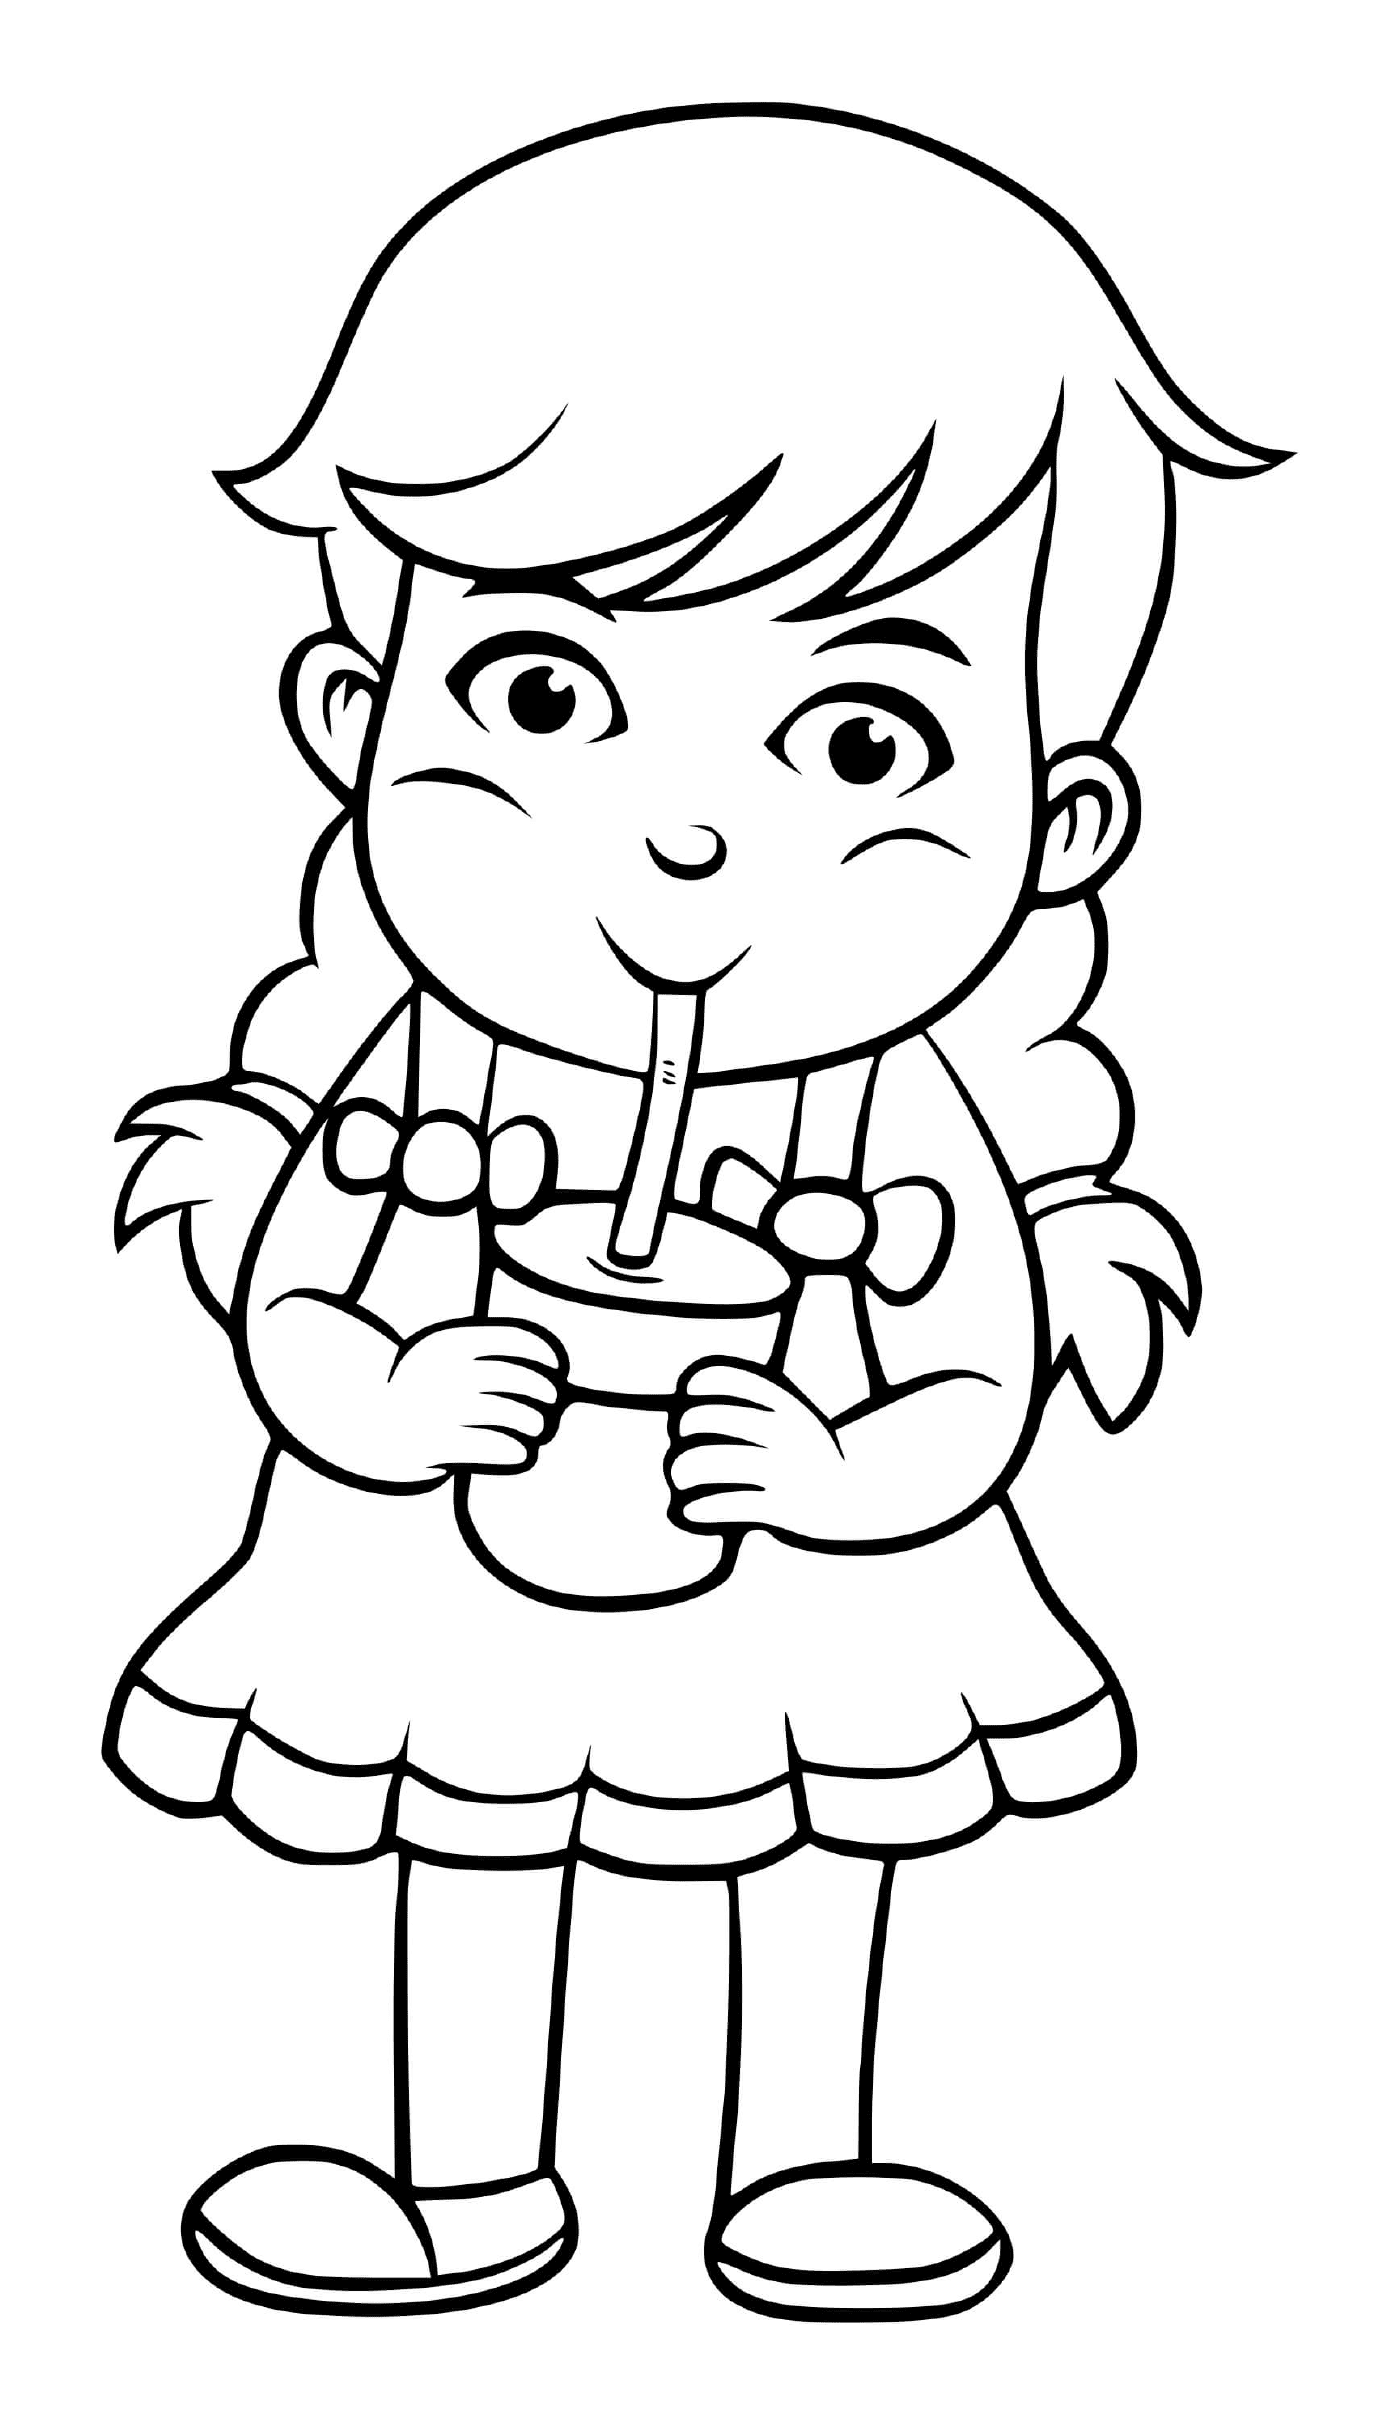  एक लड़की पानी पीती है ताकि वह उसे निगल सके और उसे ठीक कर सके 